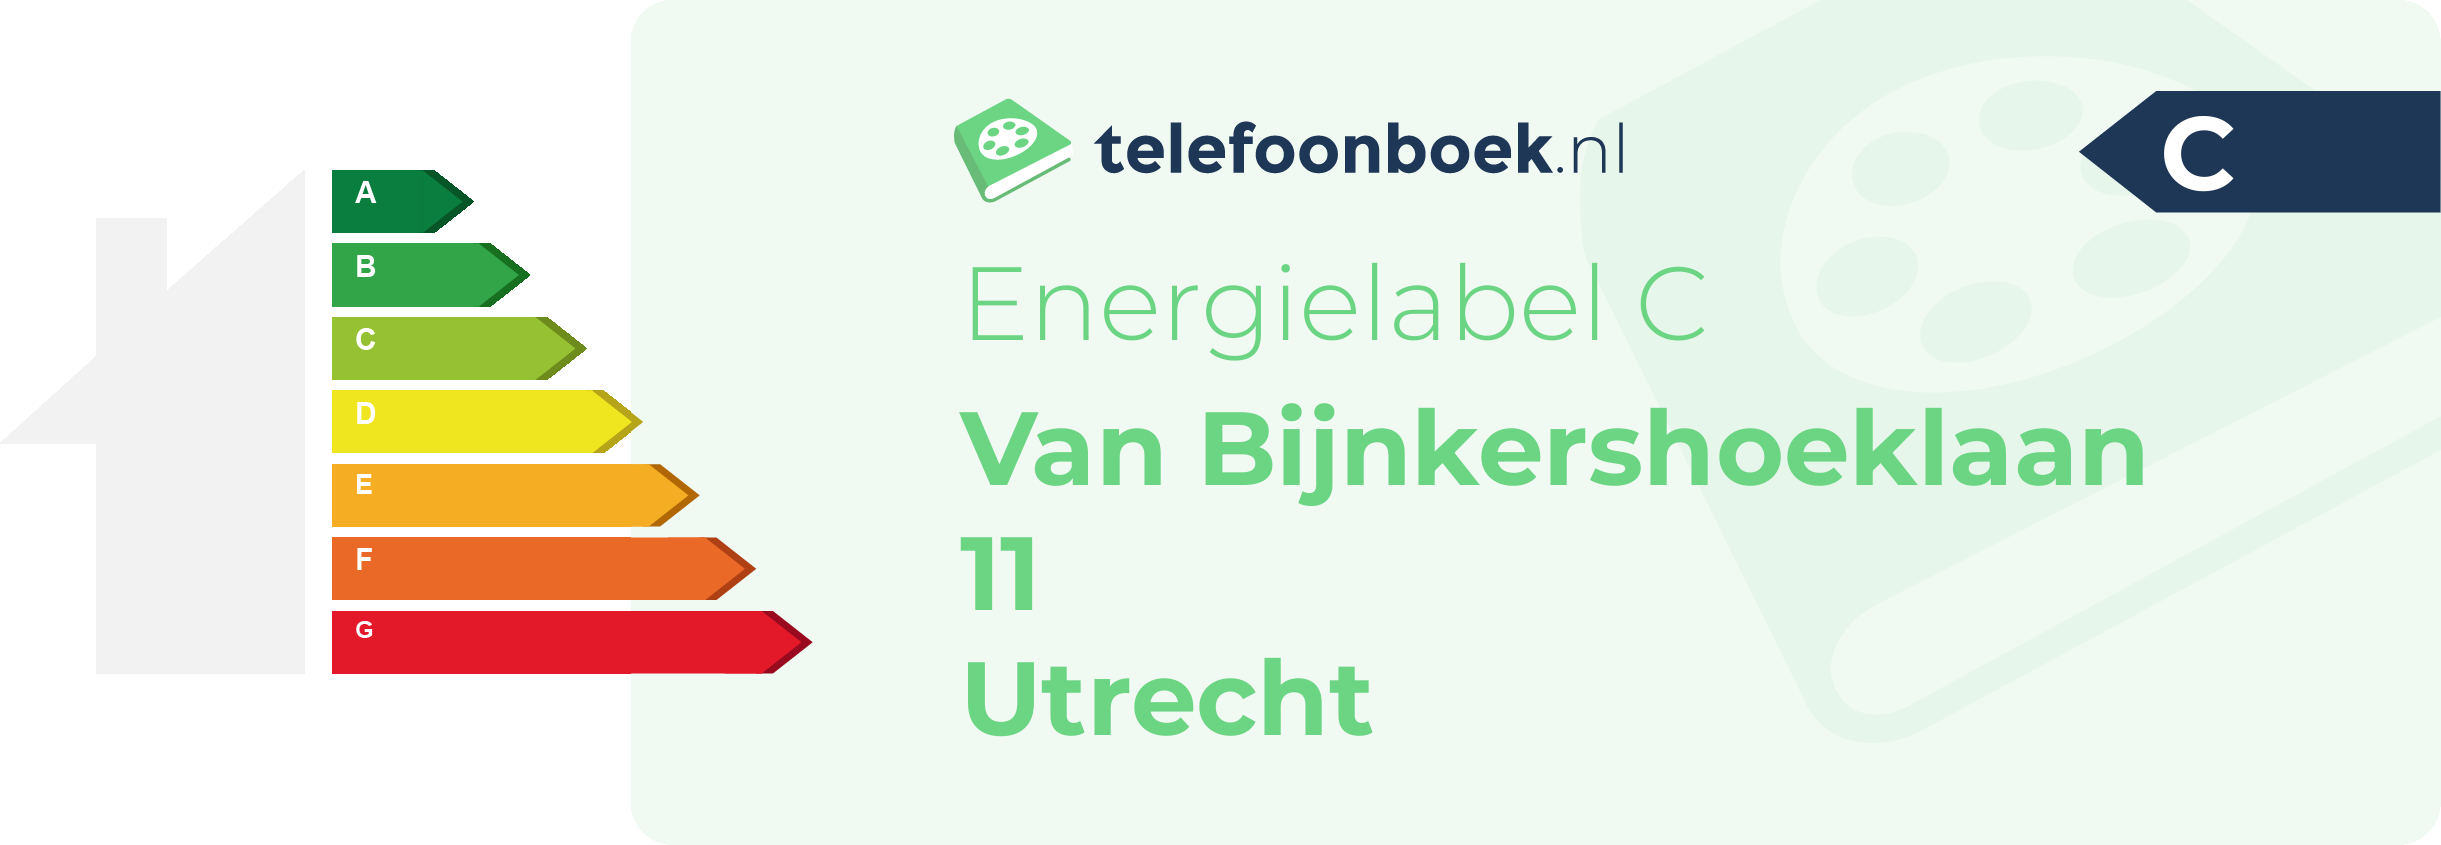 Energielabel Van Bijnkershoeklaan 11 Utrecht